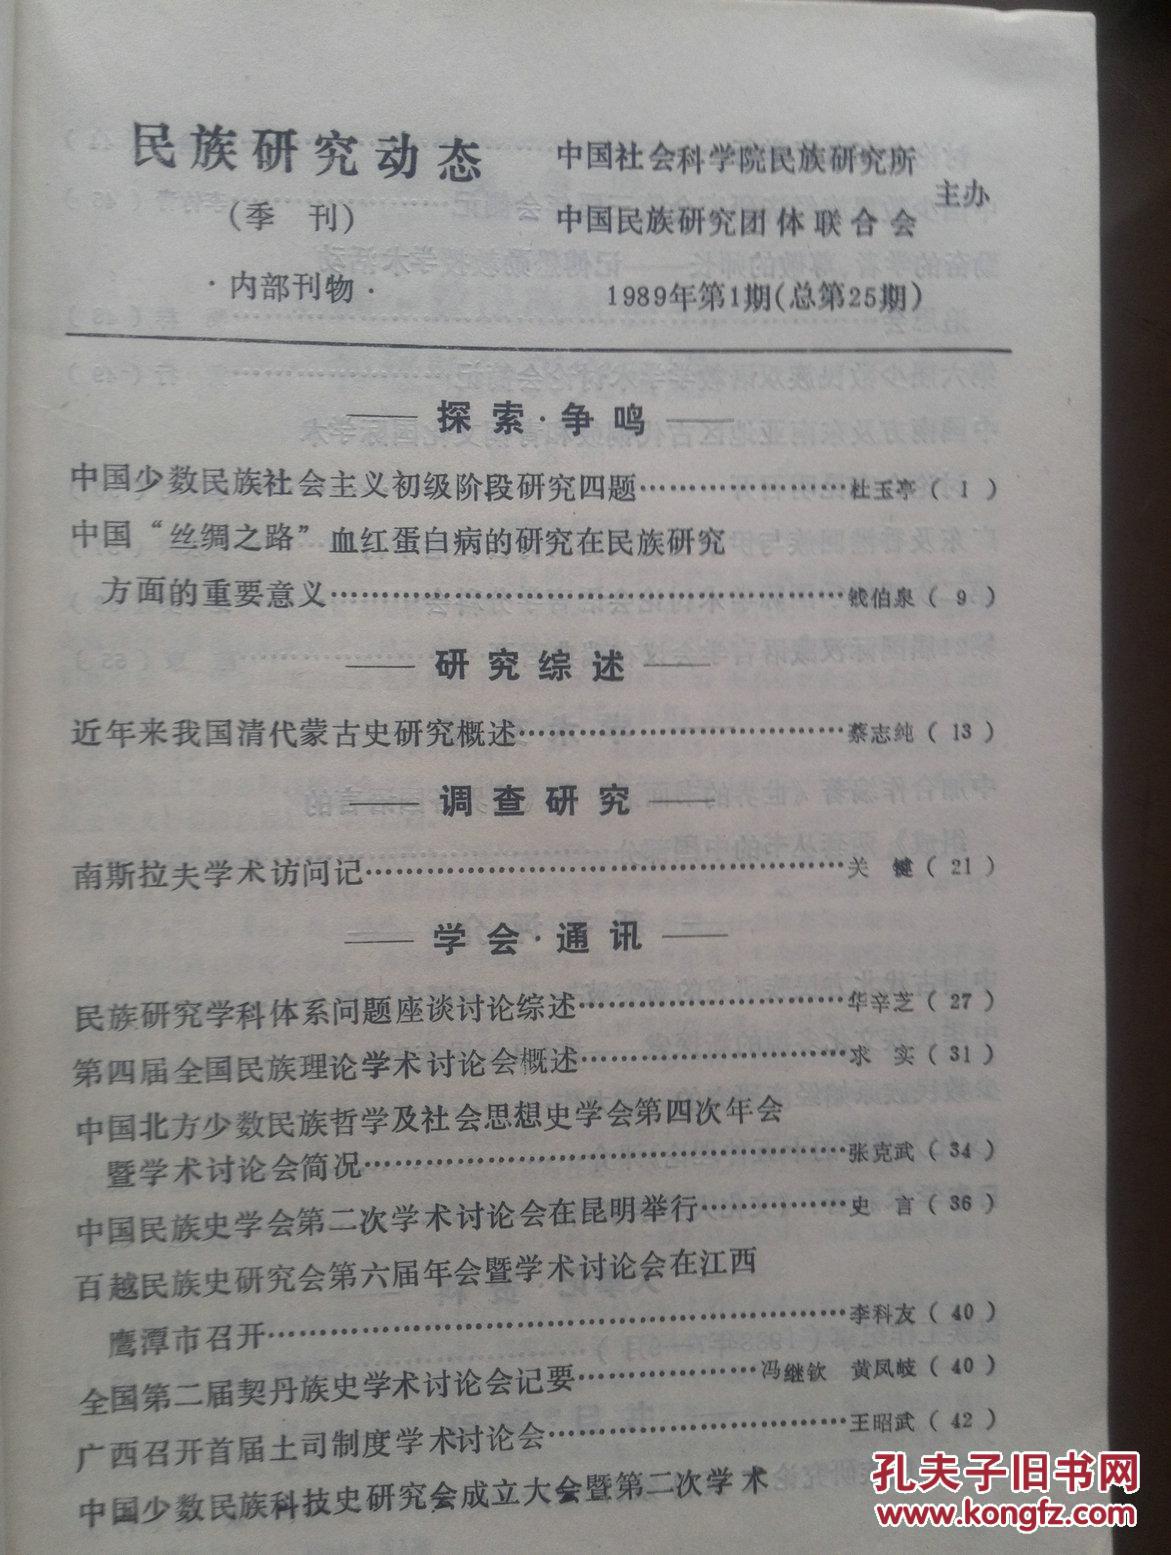 民族研究动态1989年第1期。中国“丝绸之路”血红蛋白病的研究在民族研究方面的重要意义，近年来我国清代蒙古史研究概述